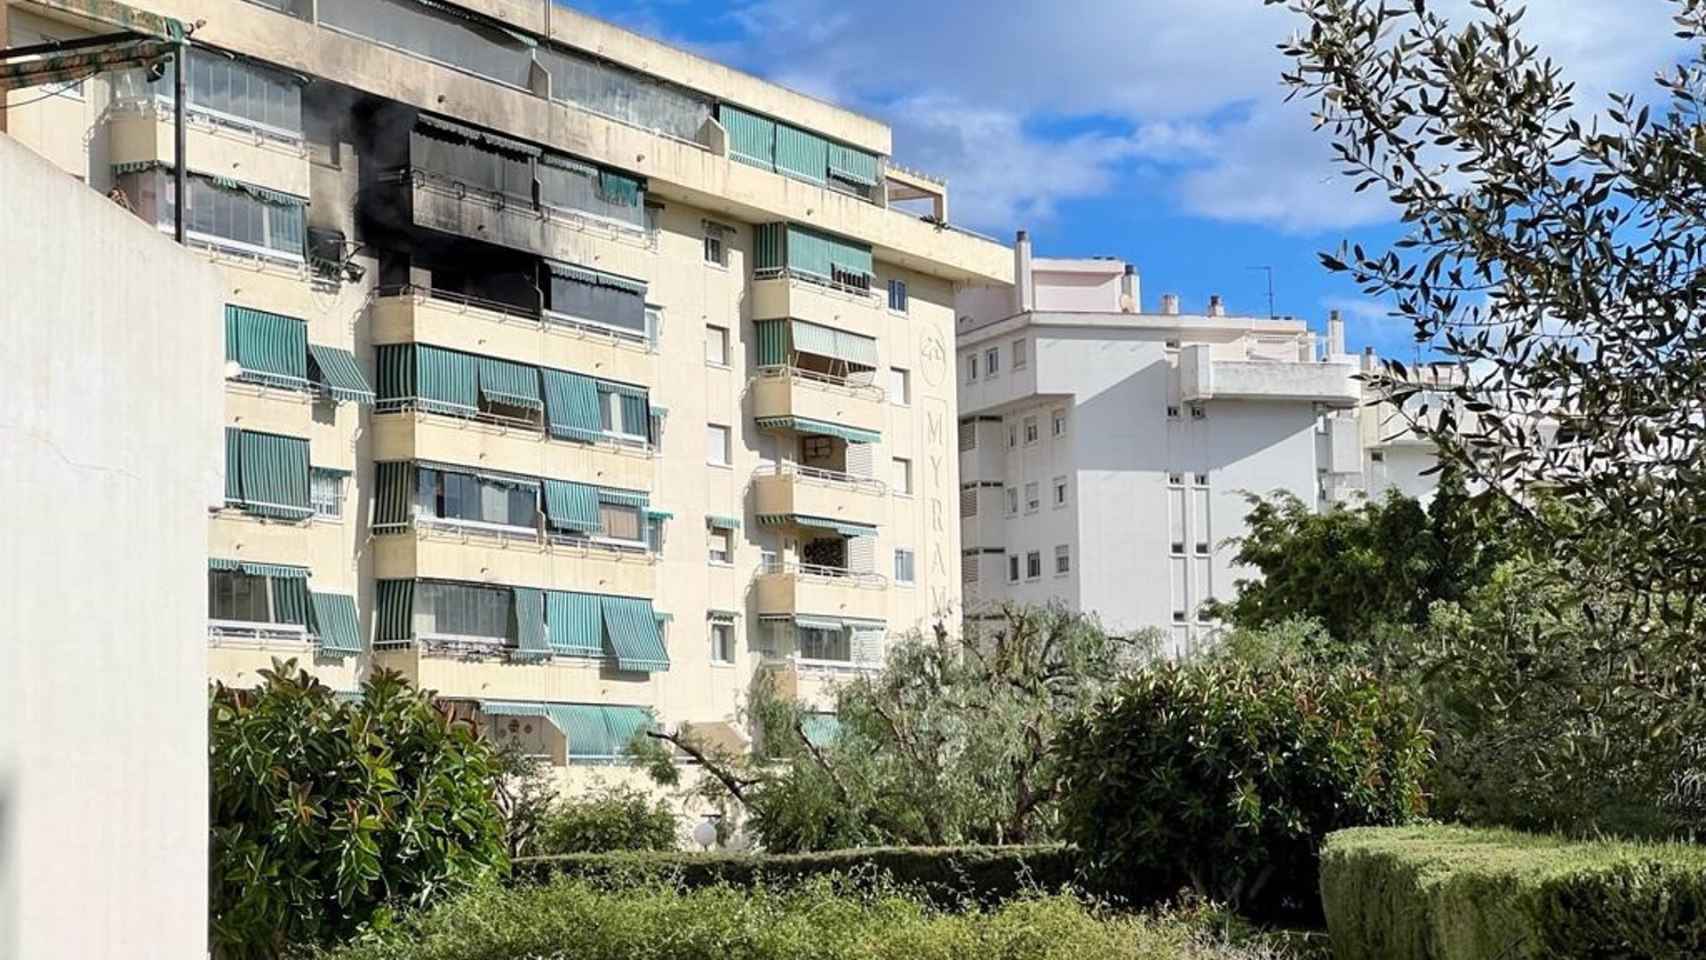 Edificio de la avenida Miramar de Fuengirola afectado por el incendio en una vivienda.